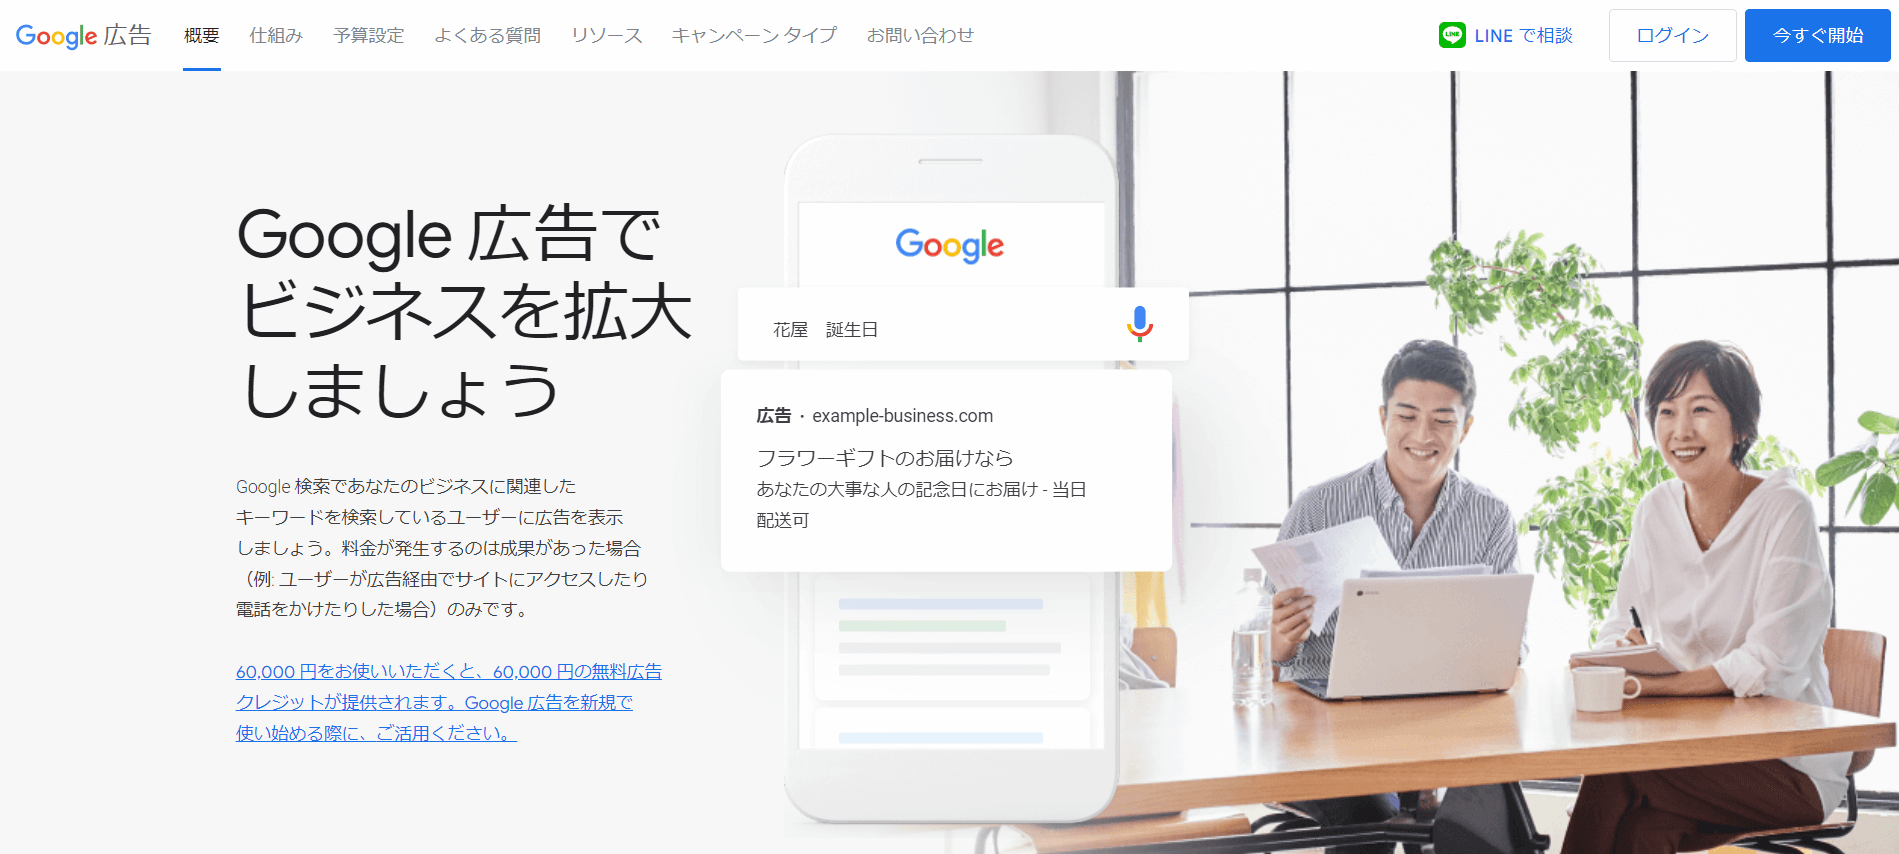 Google広告サイト